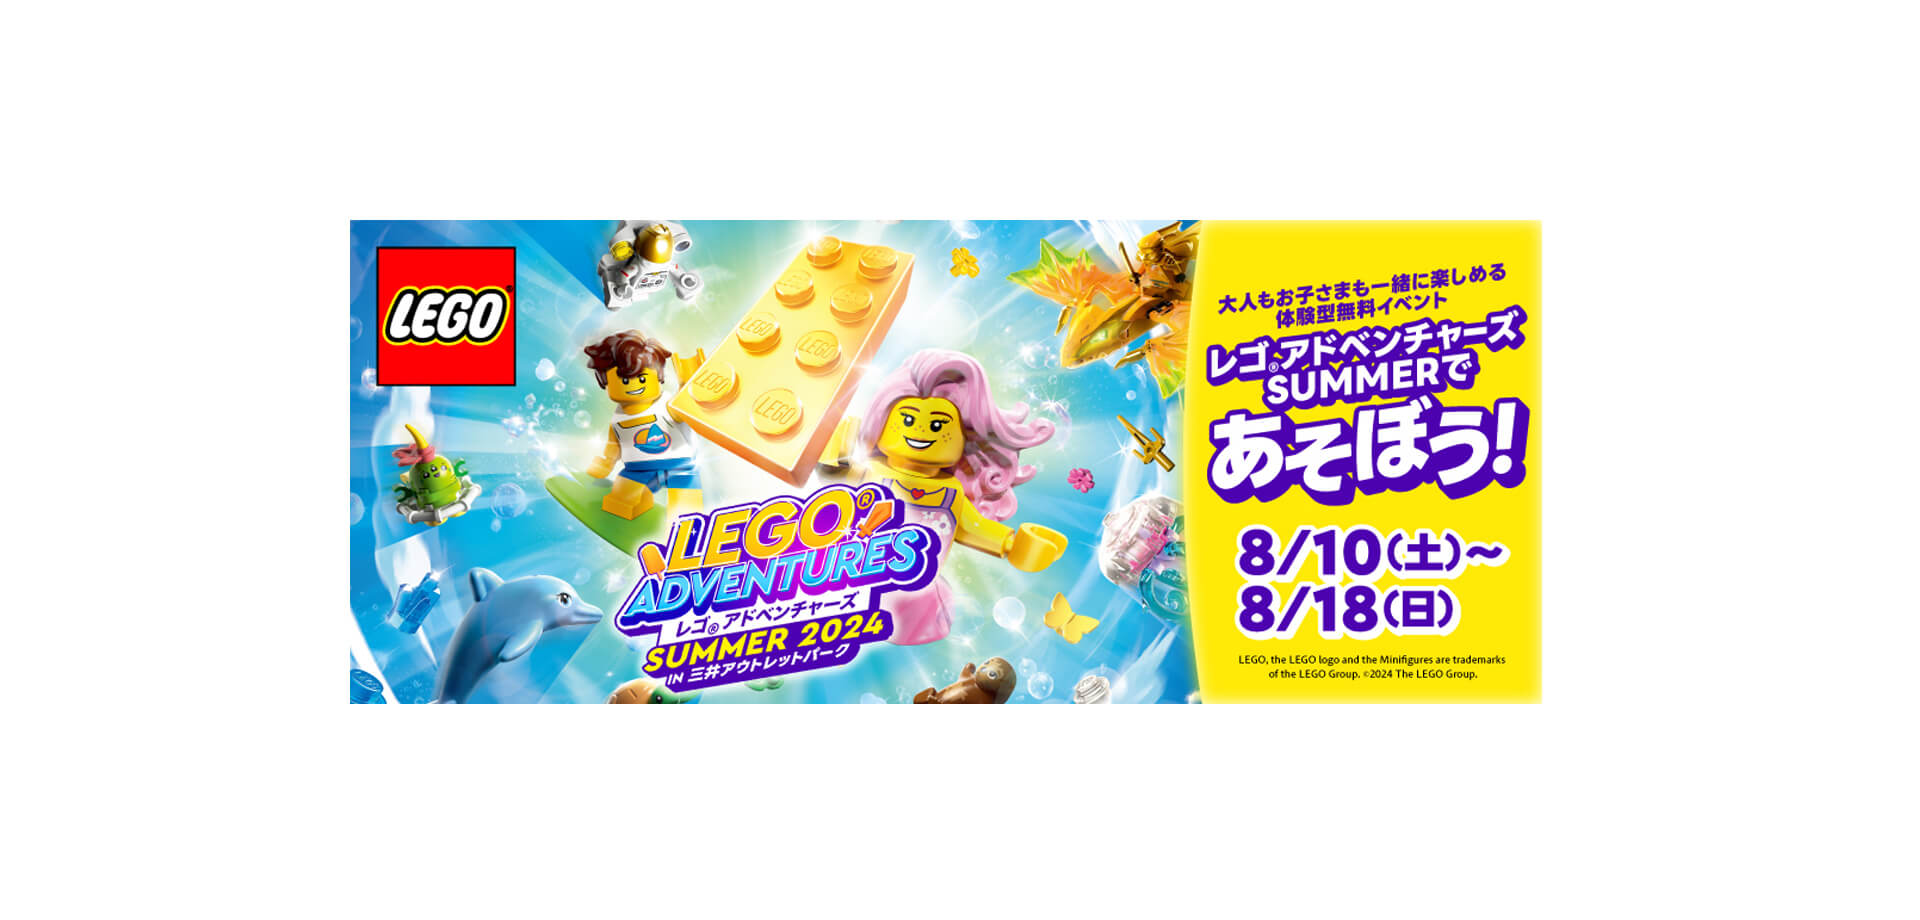 レゴ®アドベンチャーズ SUMMER 2024 in 三井アウトレットパーク バナー